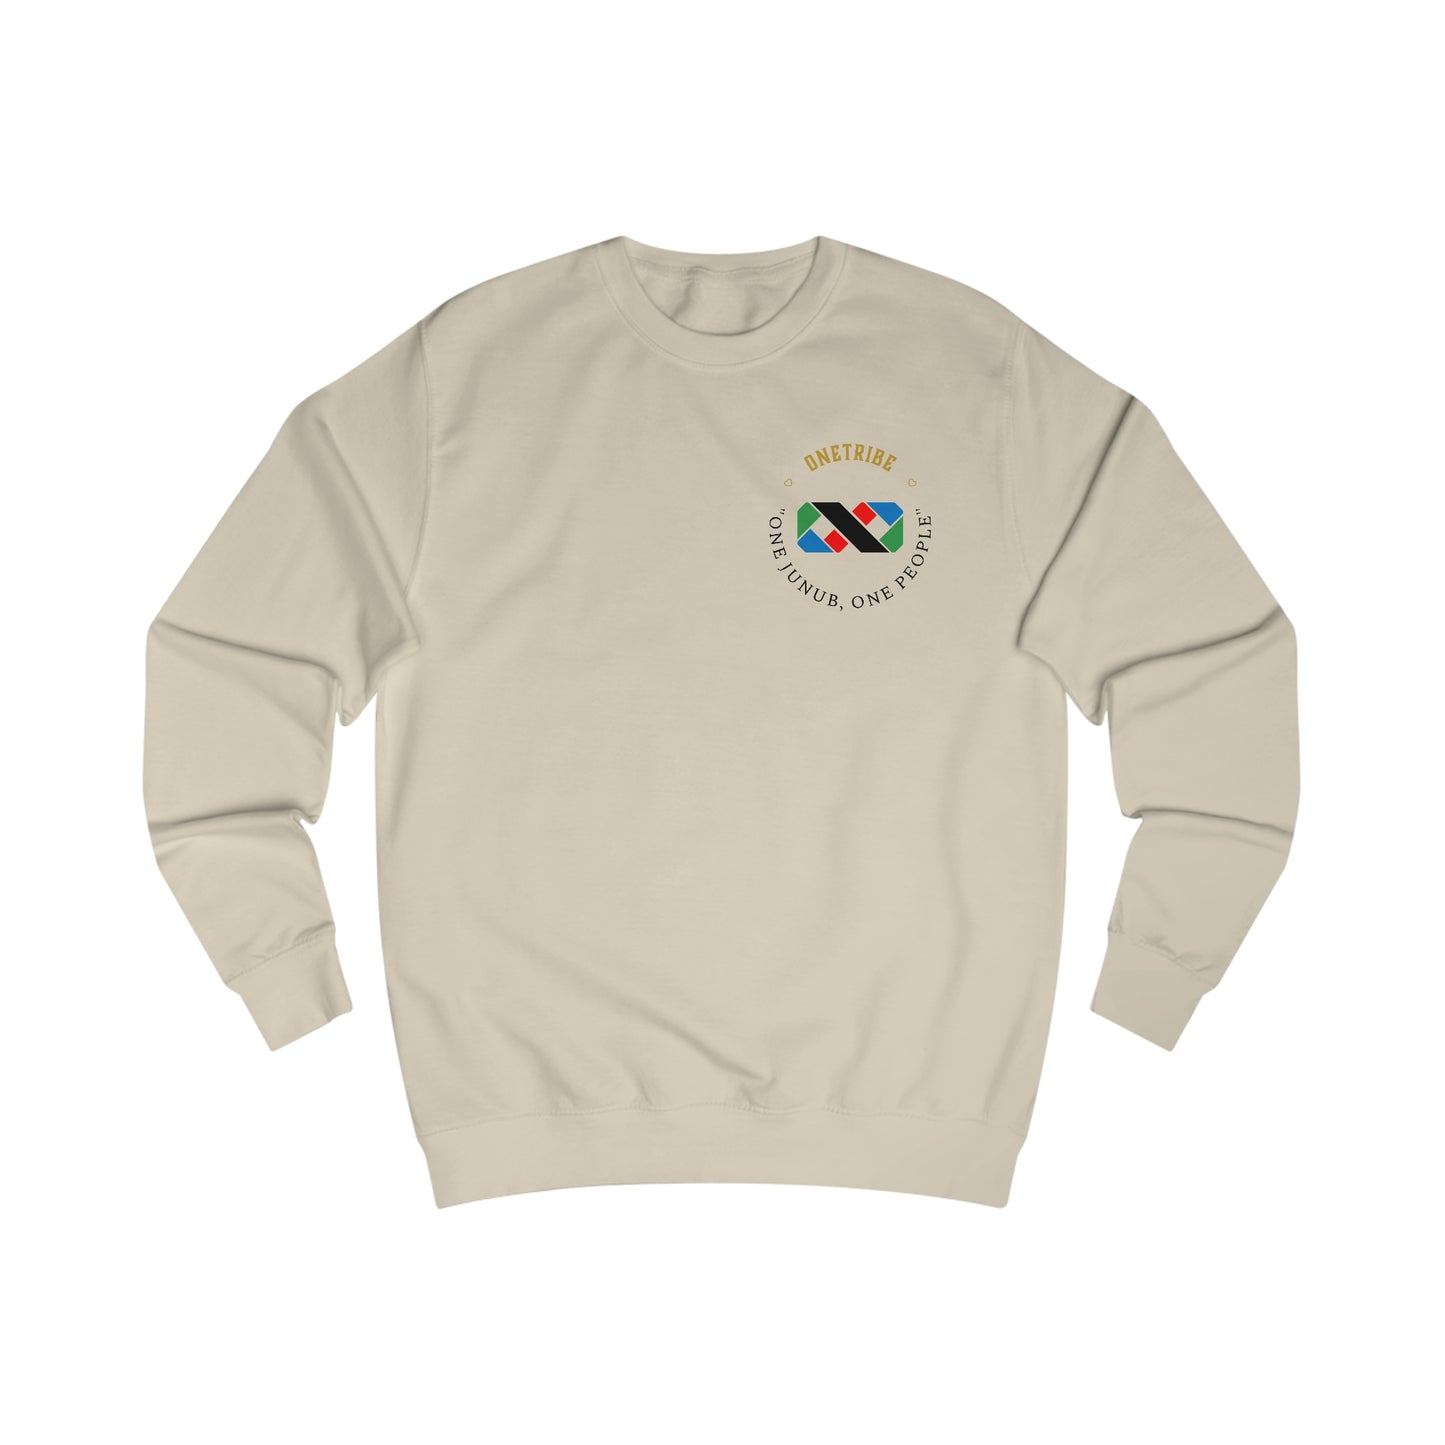 Onetribe Unisex Sweatshirt